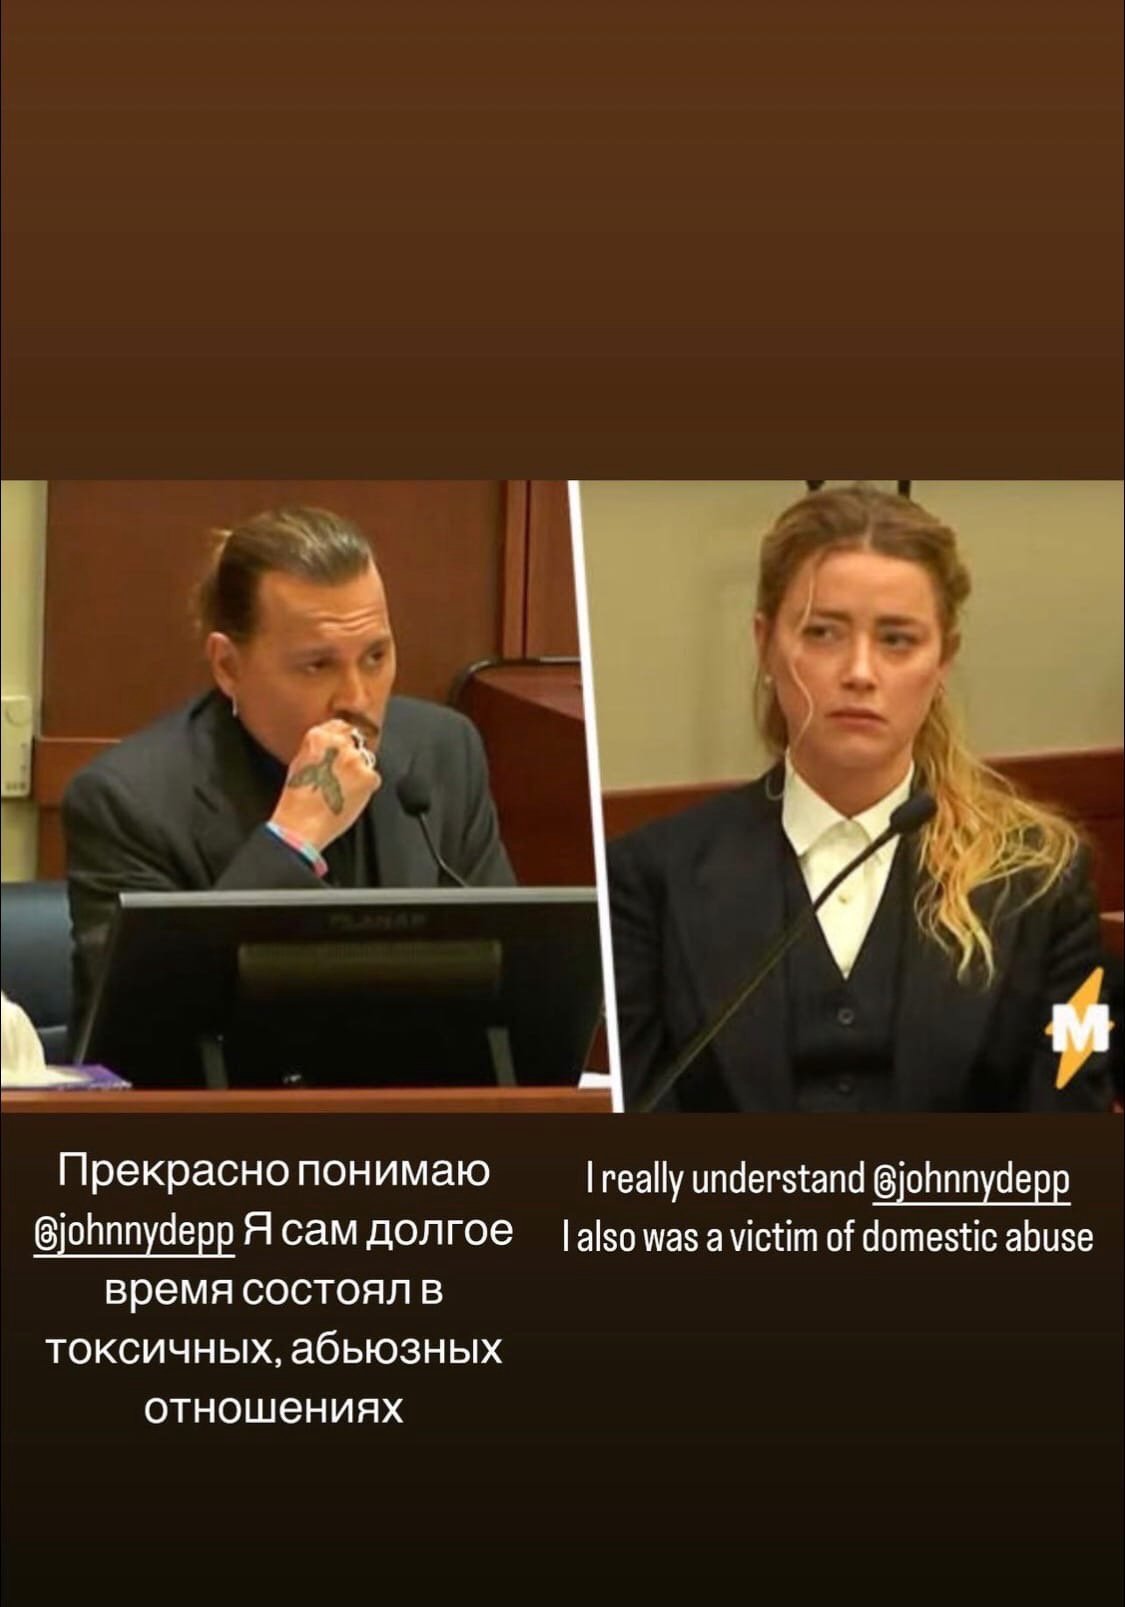 Иван Телегин сообщил, что был жертвой домашнего насилия